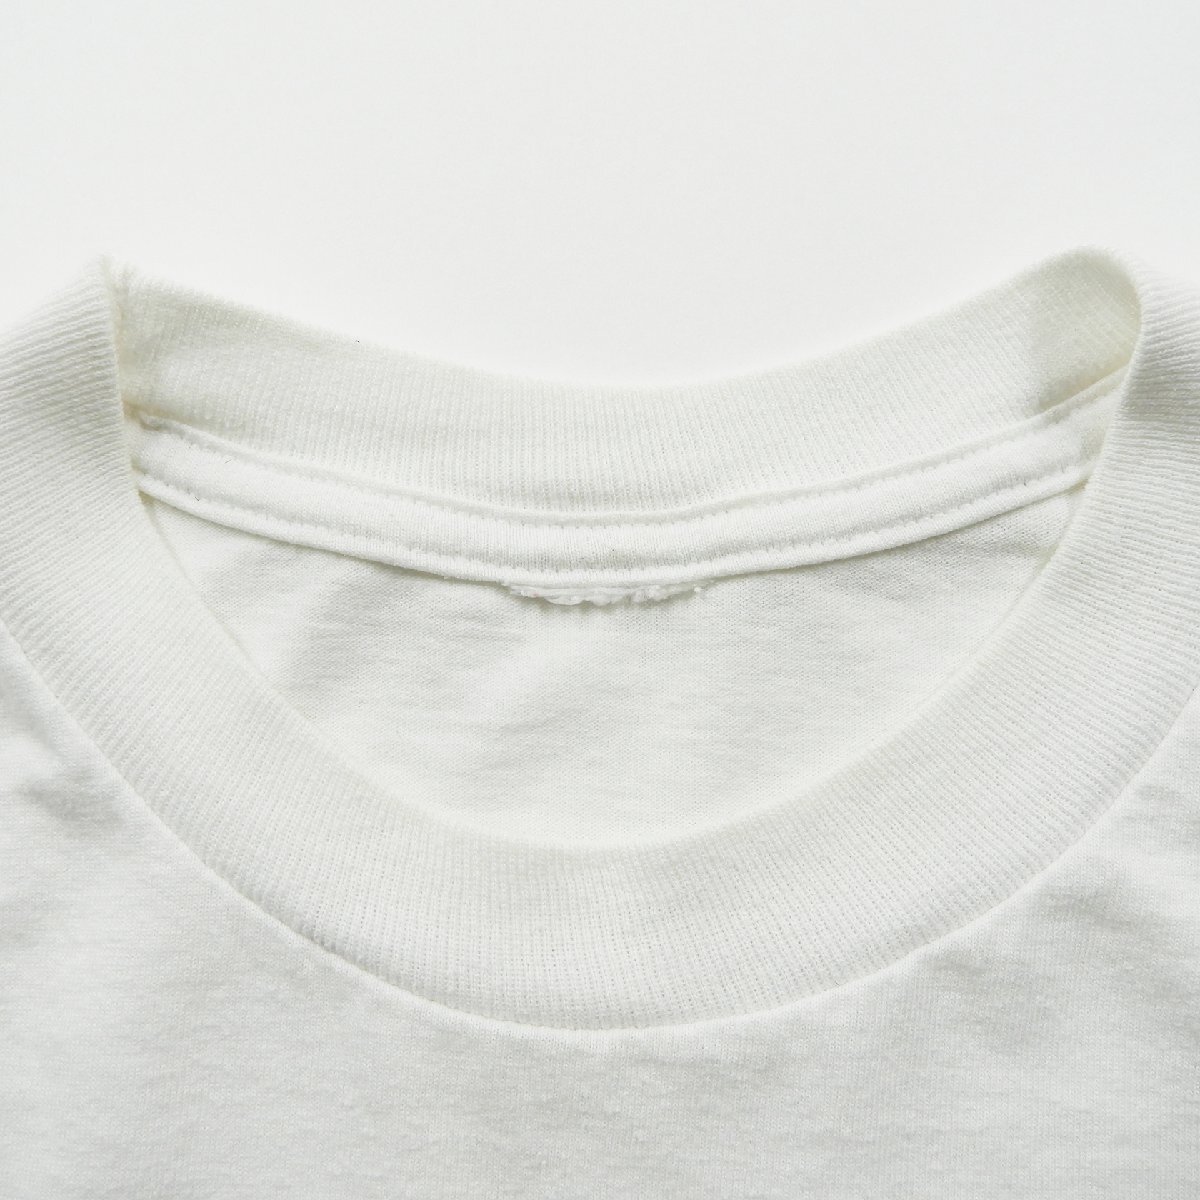 CAPTAIN Tシャツ ホワイト #18850 送料360円 キャプテン Tee 白T アメカジ カジュアル_画像3